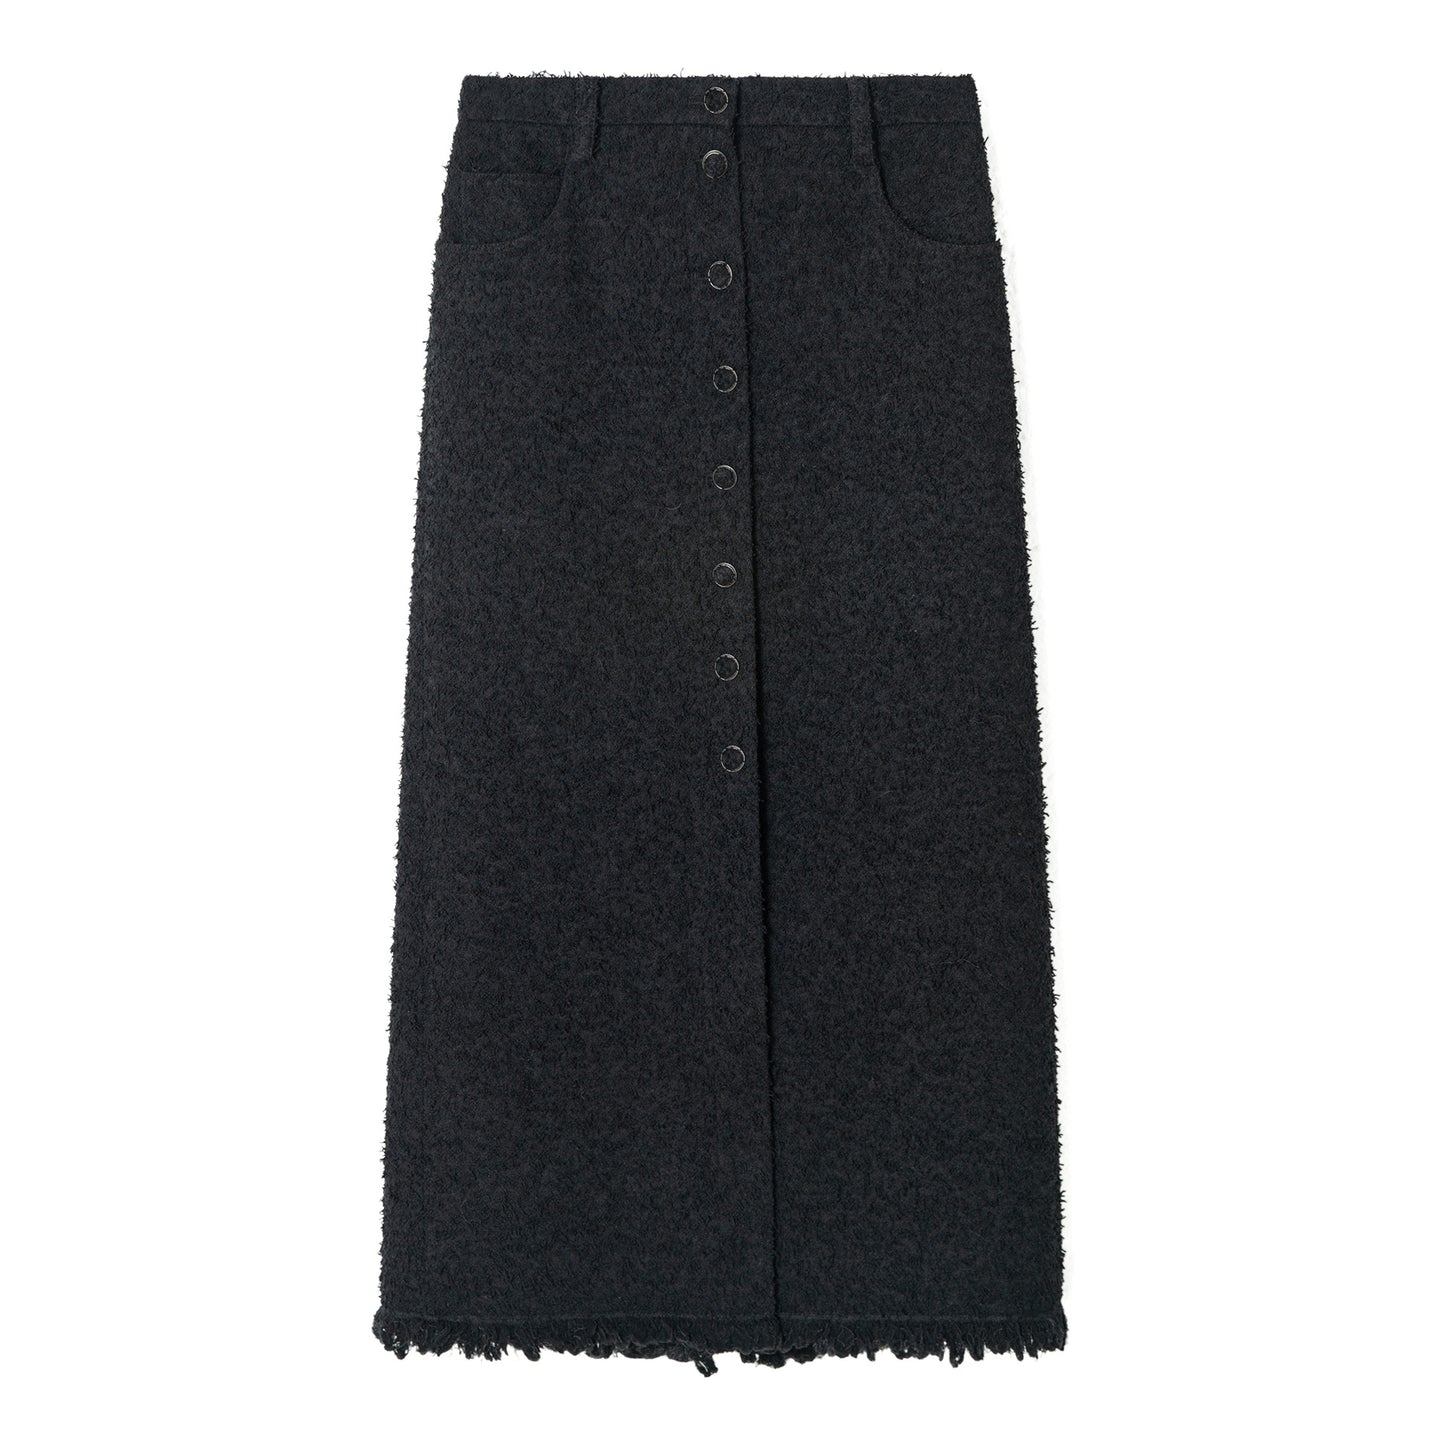 Back slit fringe long skirt_BDHL5669